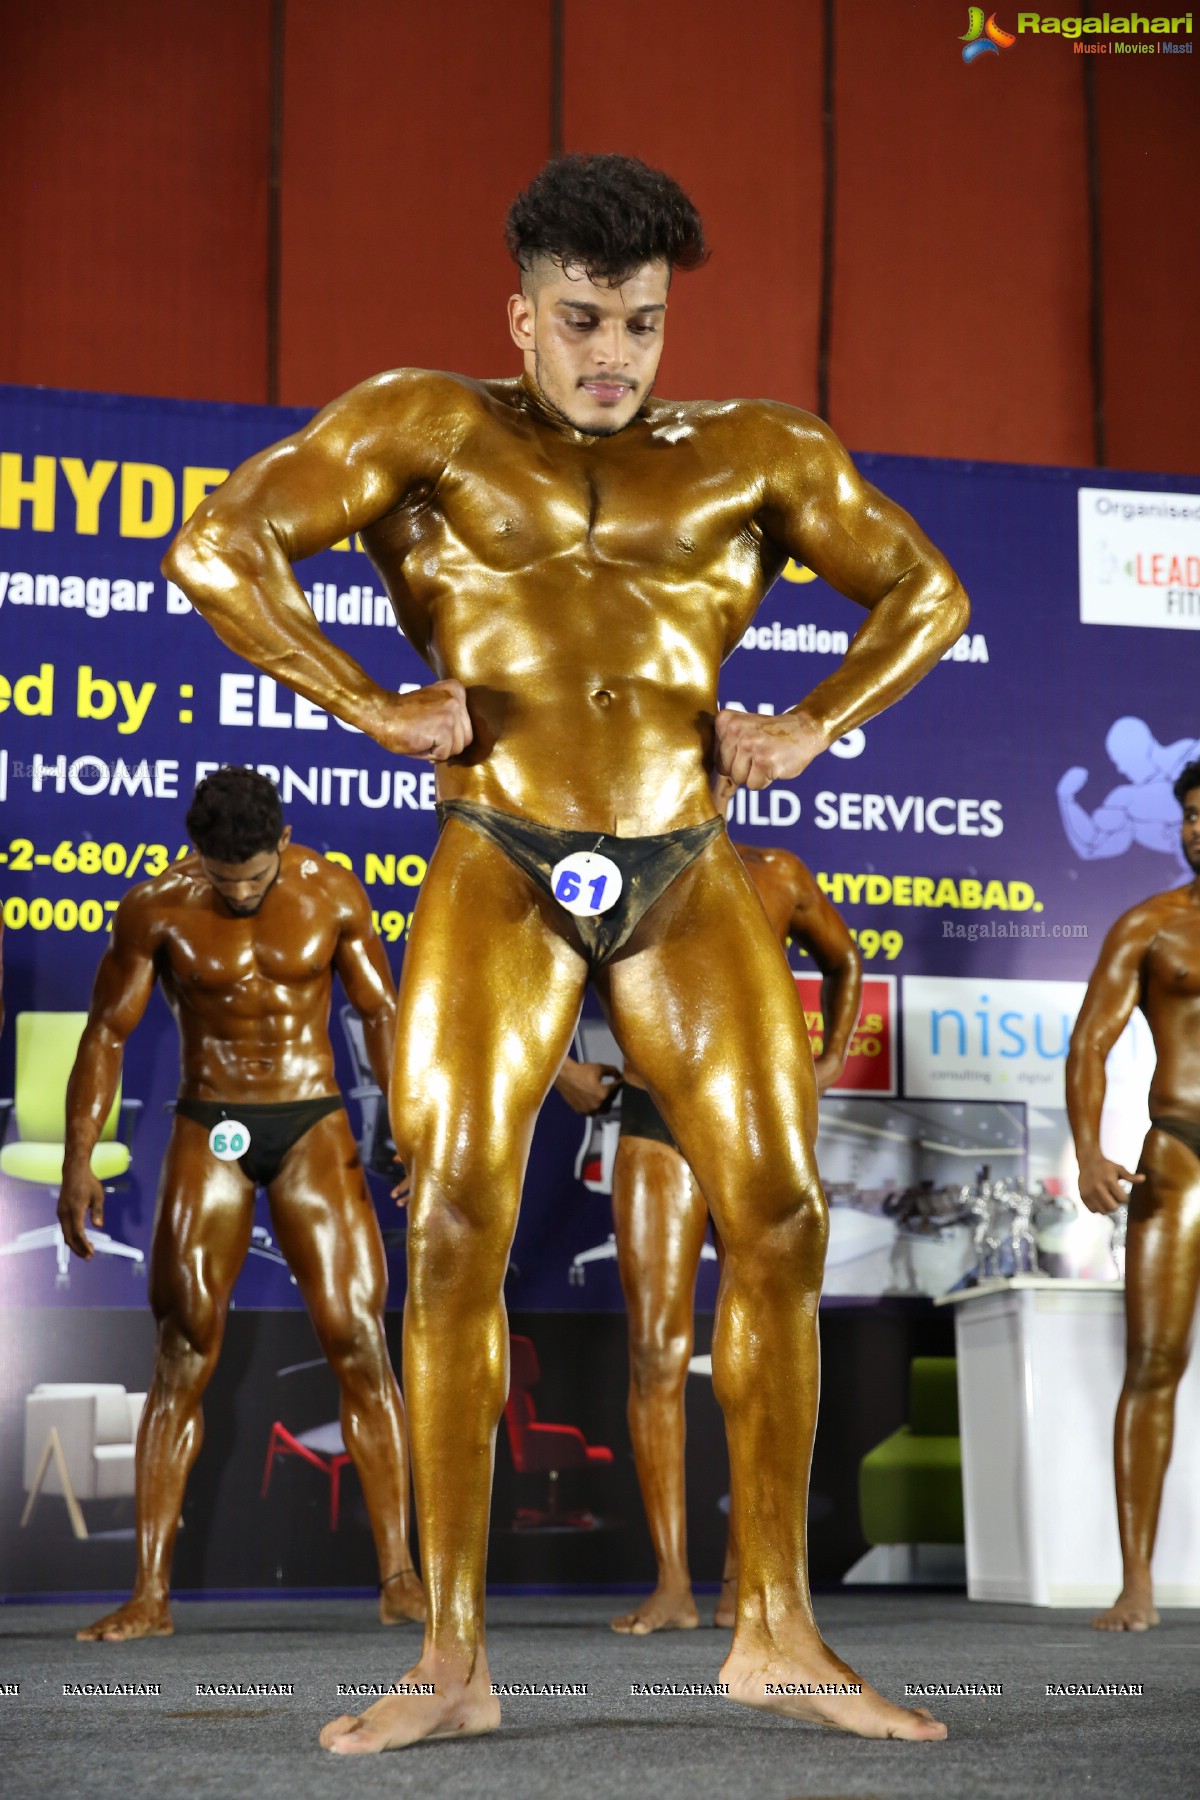 Mr Hyd 2018 Conducted By Bhagyanagar Bodybuilding Association at Hitex